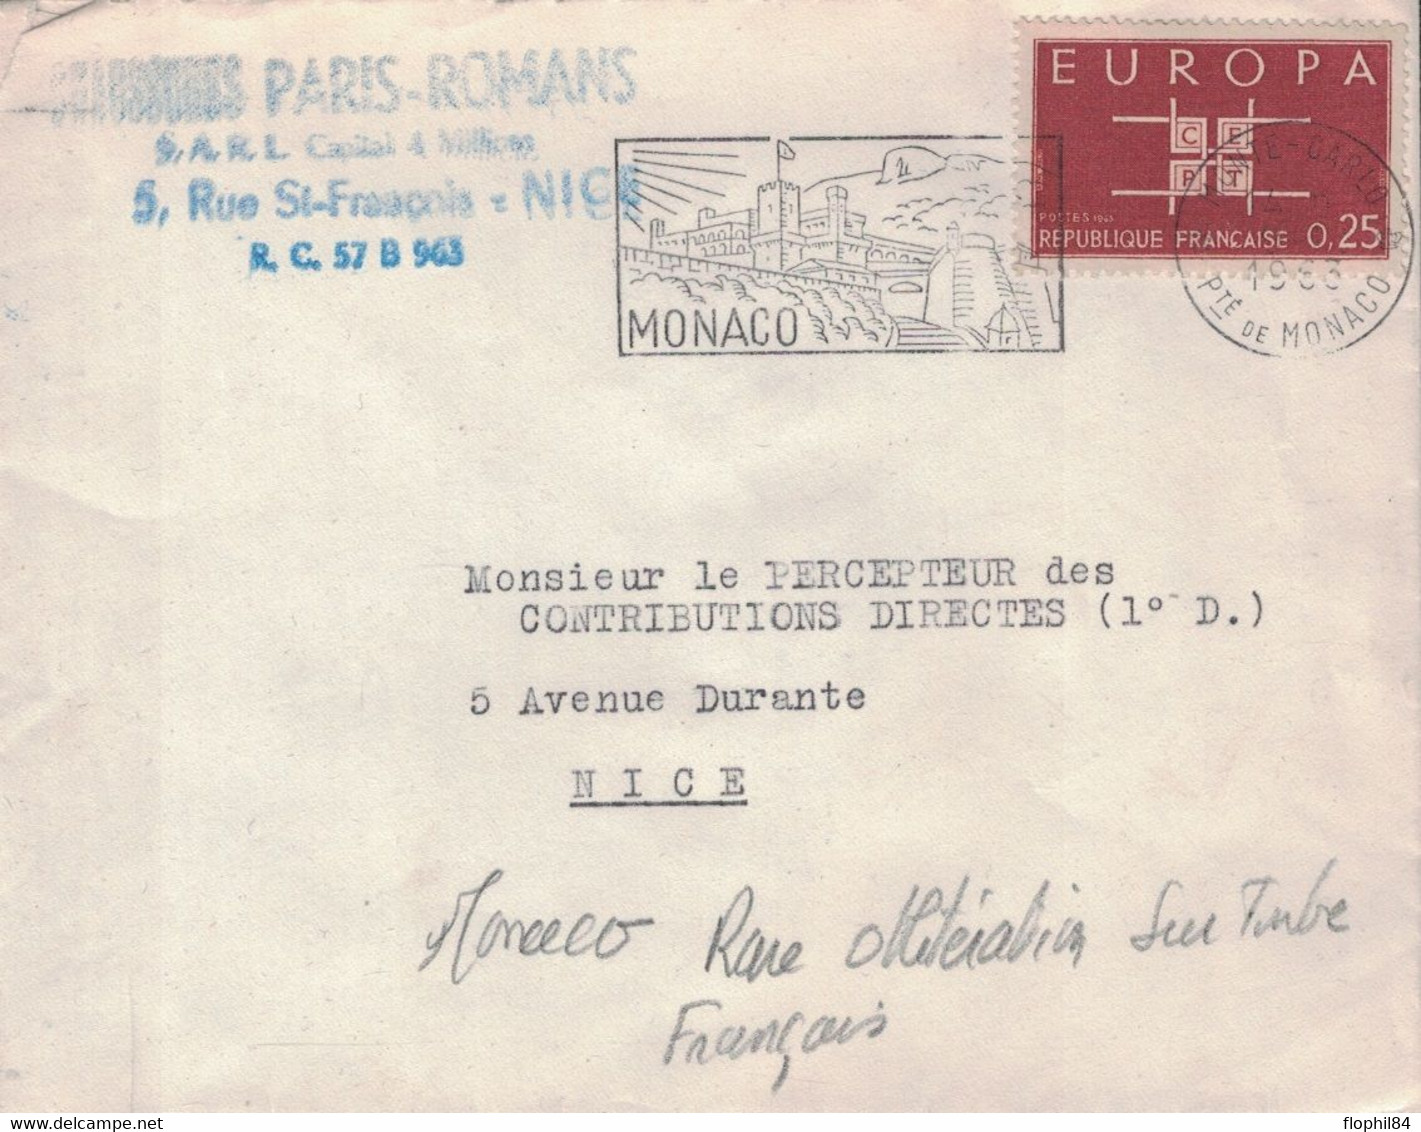 MONACO - TIMBRE DE FRANCE EUROPA 0.25C - ANNULATION FLAMME DE MONACO - 14-2-1963 - PEU COURANT. - Lettres & Documents